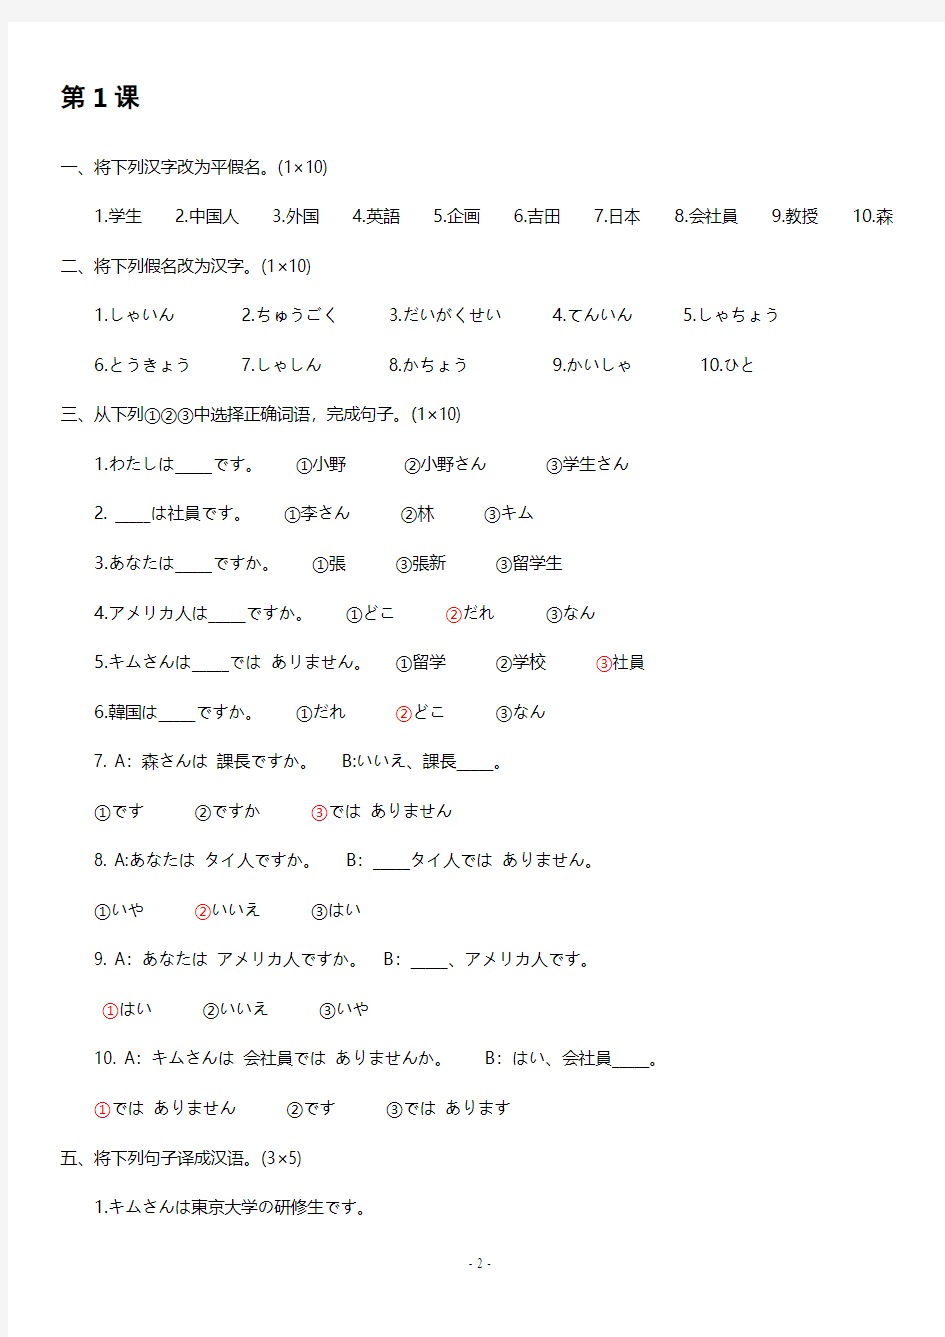 标准日本语 初级 上册 同步测试卷 (含答案)